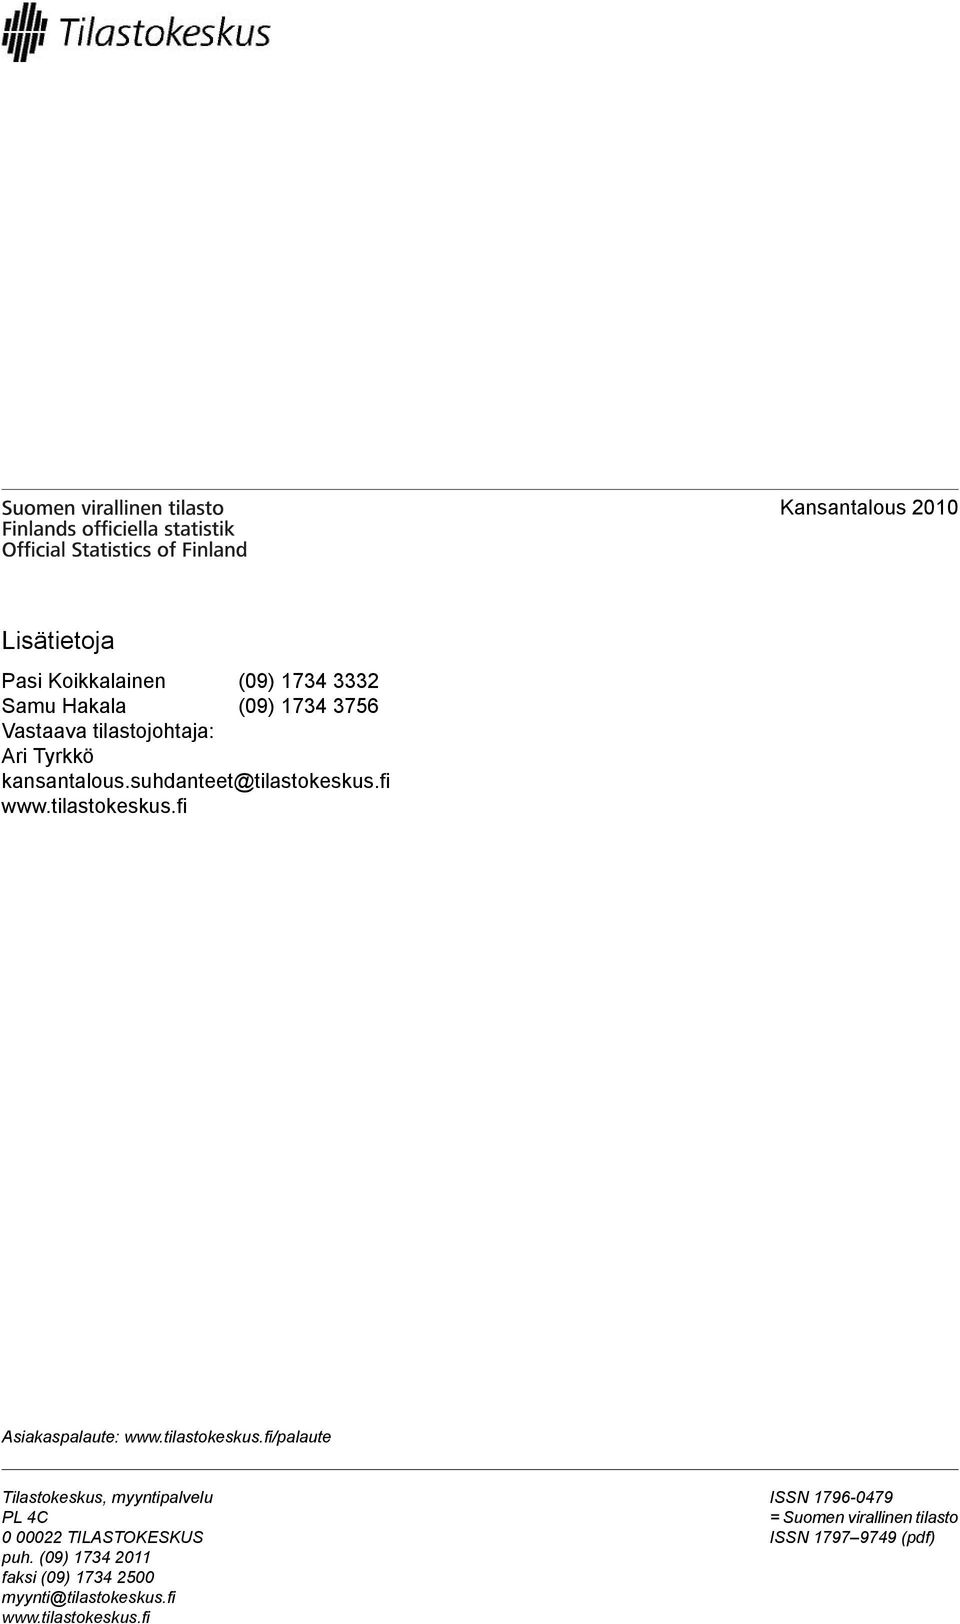 tilastokeskus.fi/palaute Tilastokeskus, myyntipalvelu PL 4C 0 00022 TILASTOKESKUS puh.